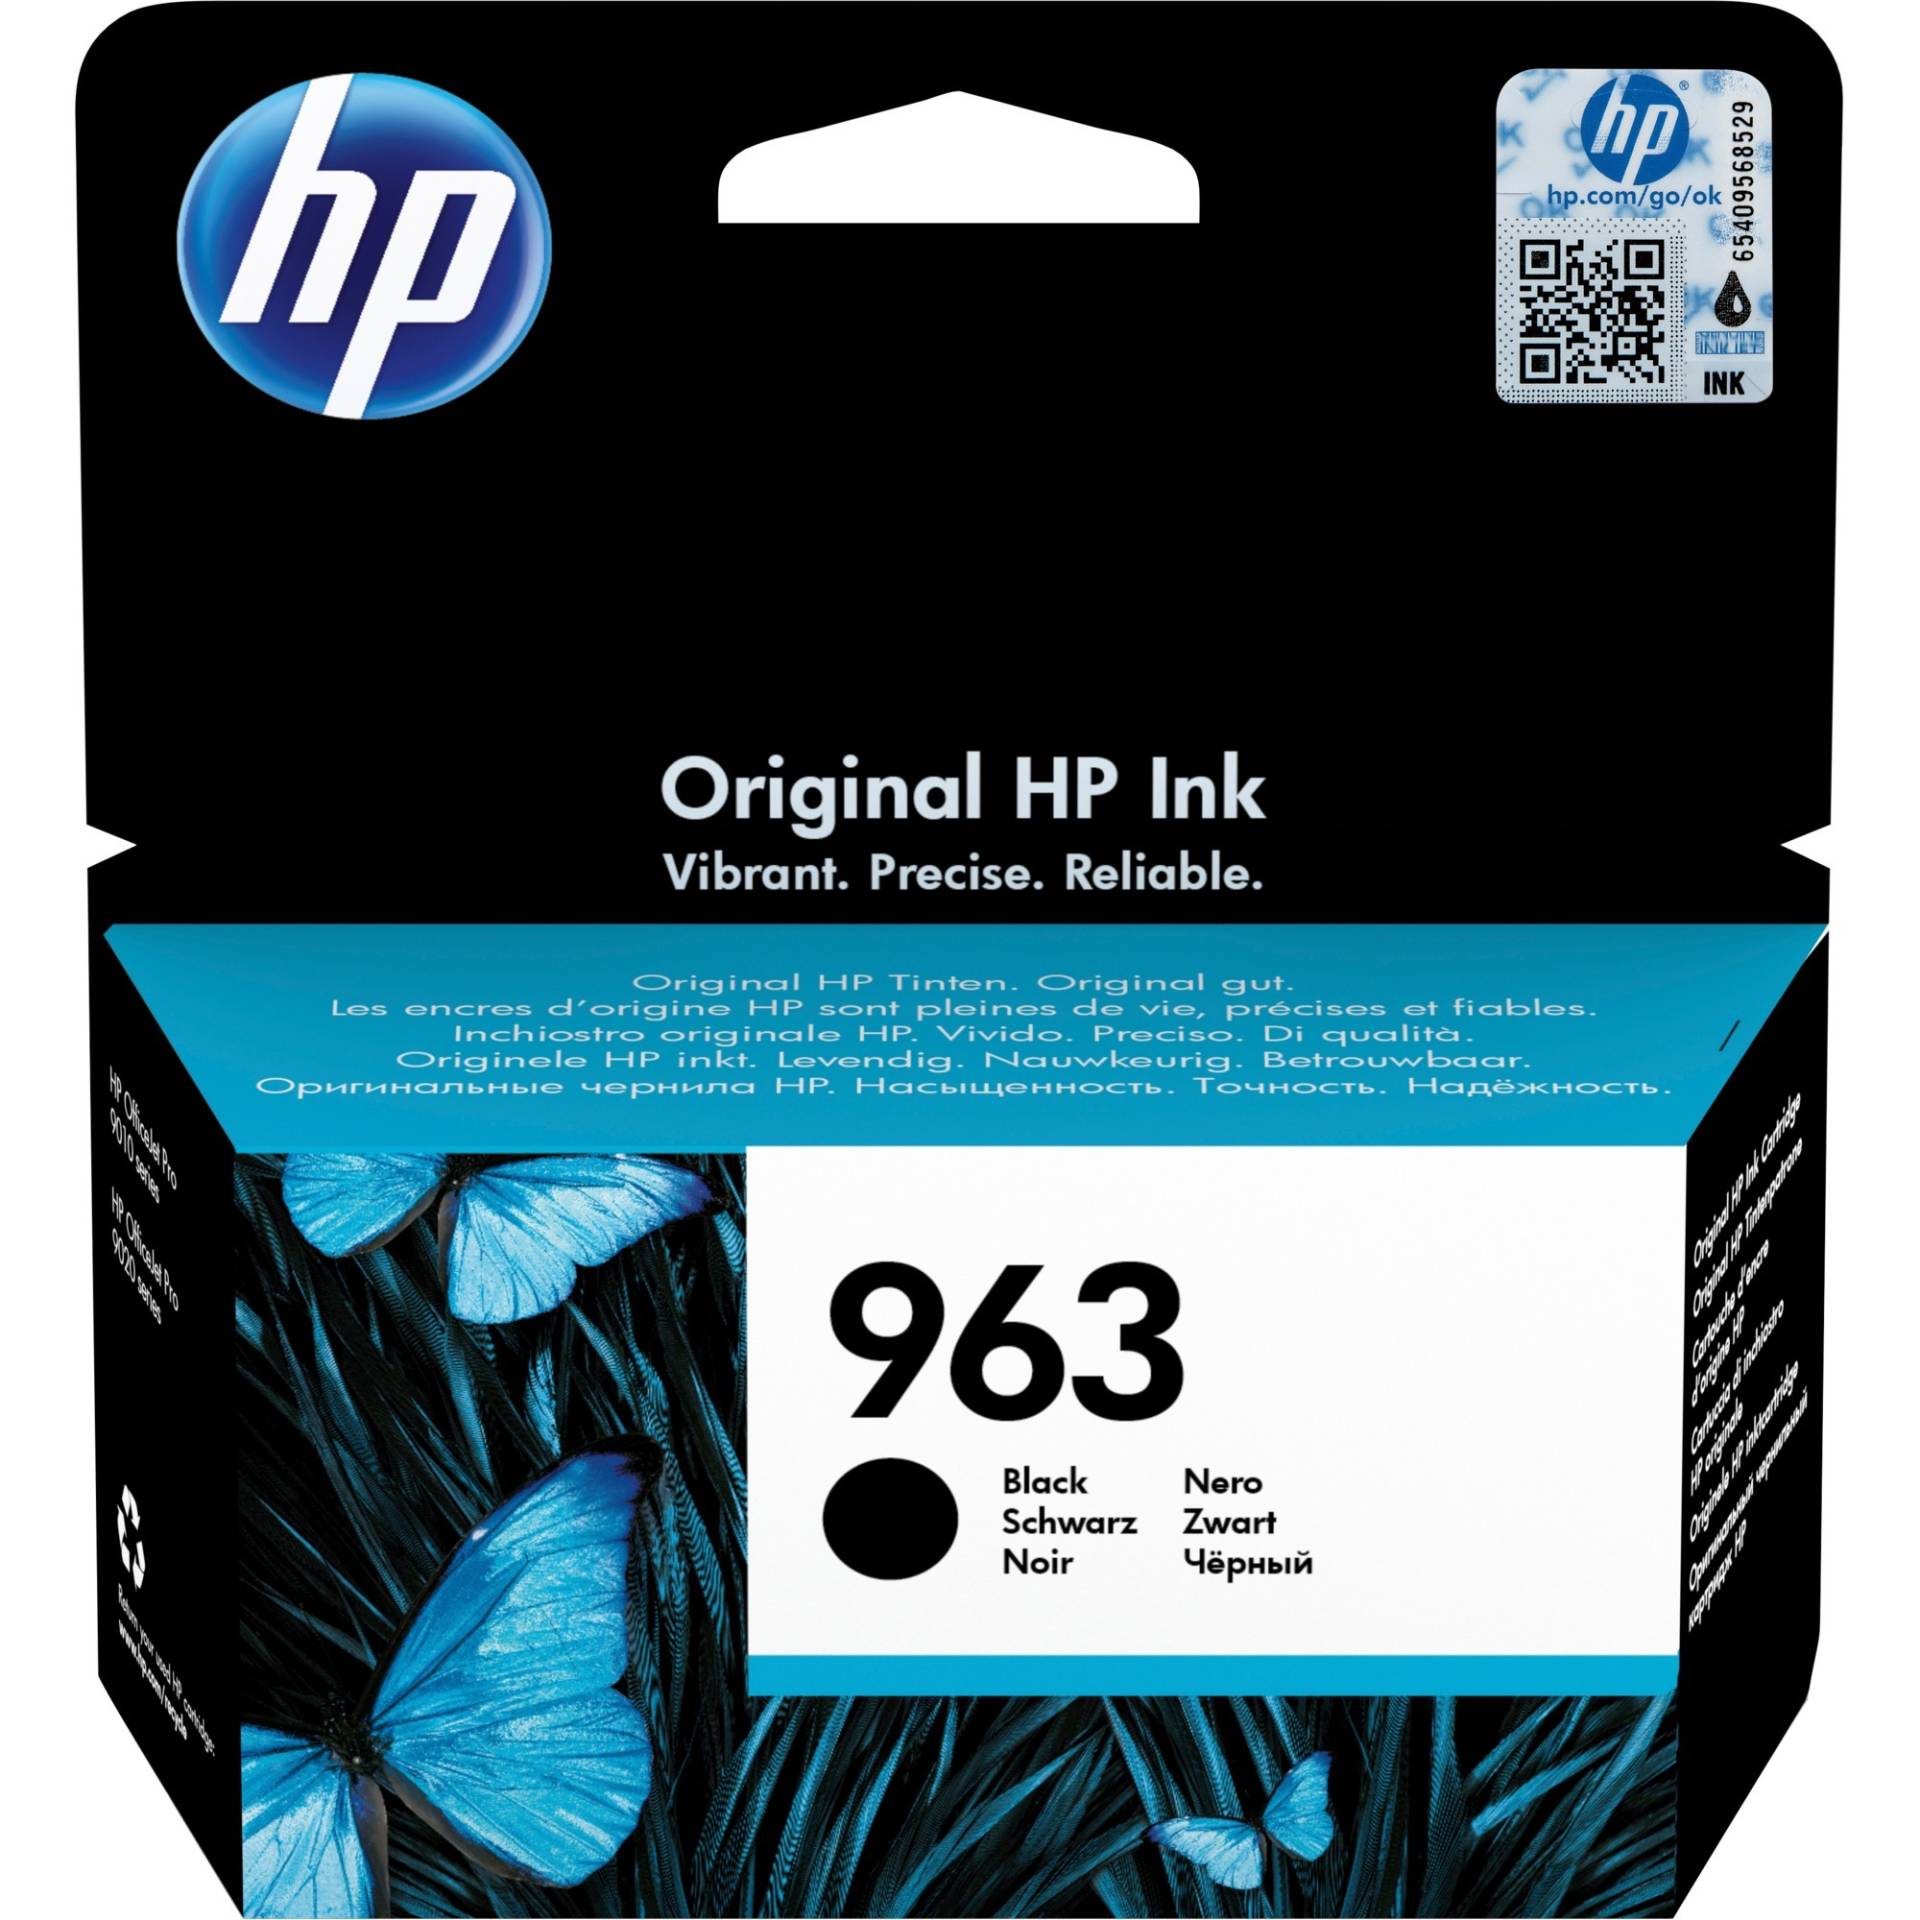 Tinte schwarz Nr. 963 (3JA26AE) von HP